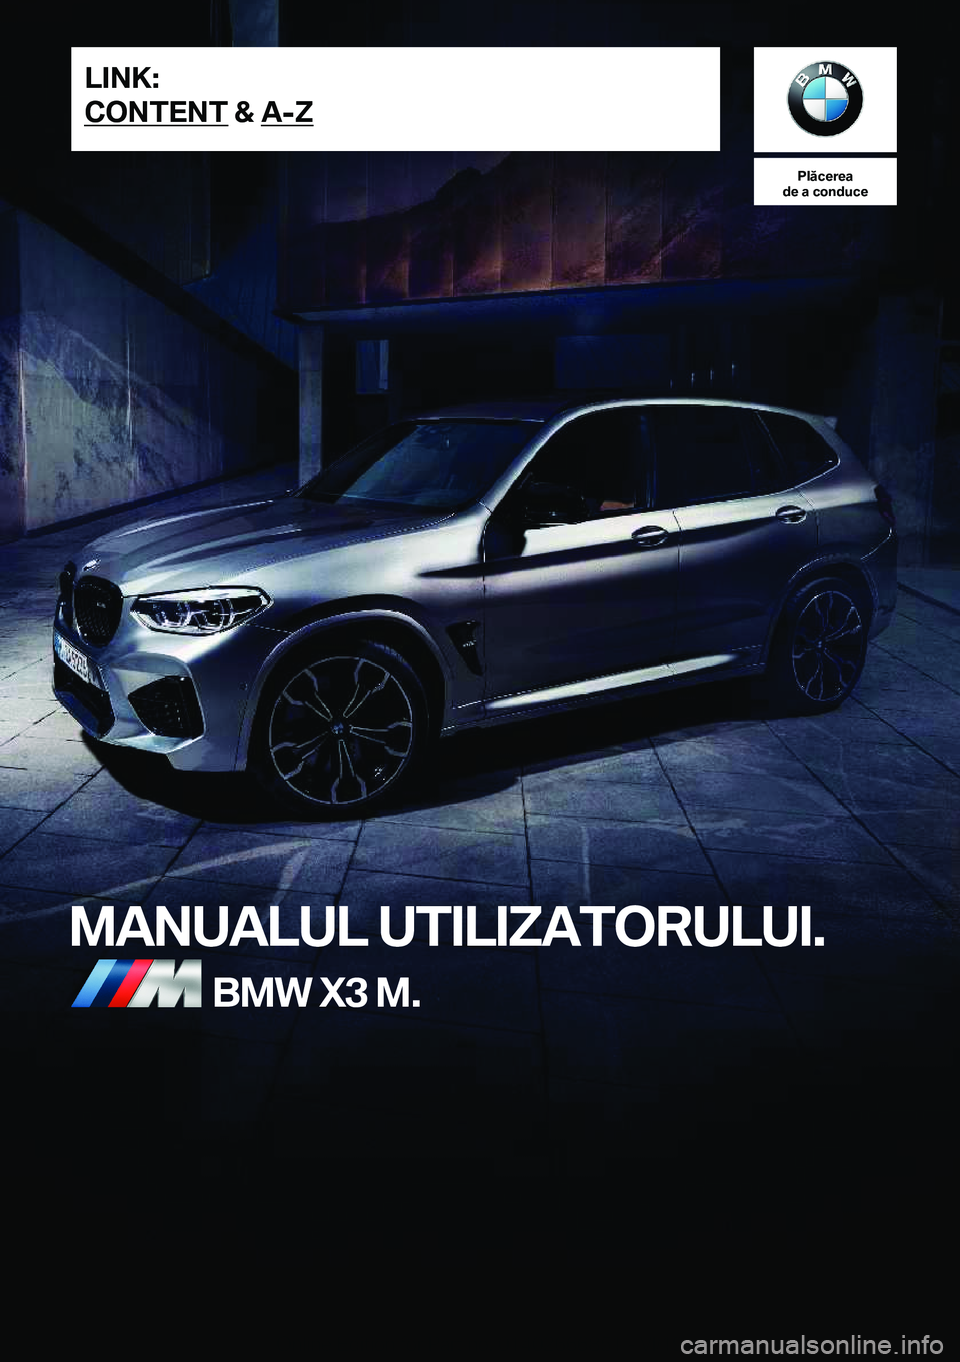 BMW X3 M 2020  Ghiduri De Utilizare (in Romanian) �P�l�ă�c�e�r�e�a
�d�e��a��c�o�n�d�u�c�e
�M�A�N�U�A�L�U�L��U�T�I�L�I�Z�A�T�O�R�U�L�U�I�.�B�M�W��X�3��M�.�L�I�N�K�:
�C�O�N�T�E�N�T��&��A�-�Z�O�n�l�i�n�e��E�d�i�t�i�o�n��f�o�r��P�a�r�t��n�o�.